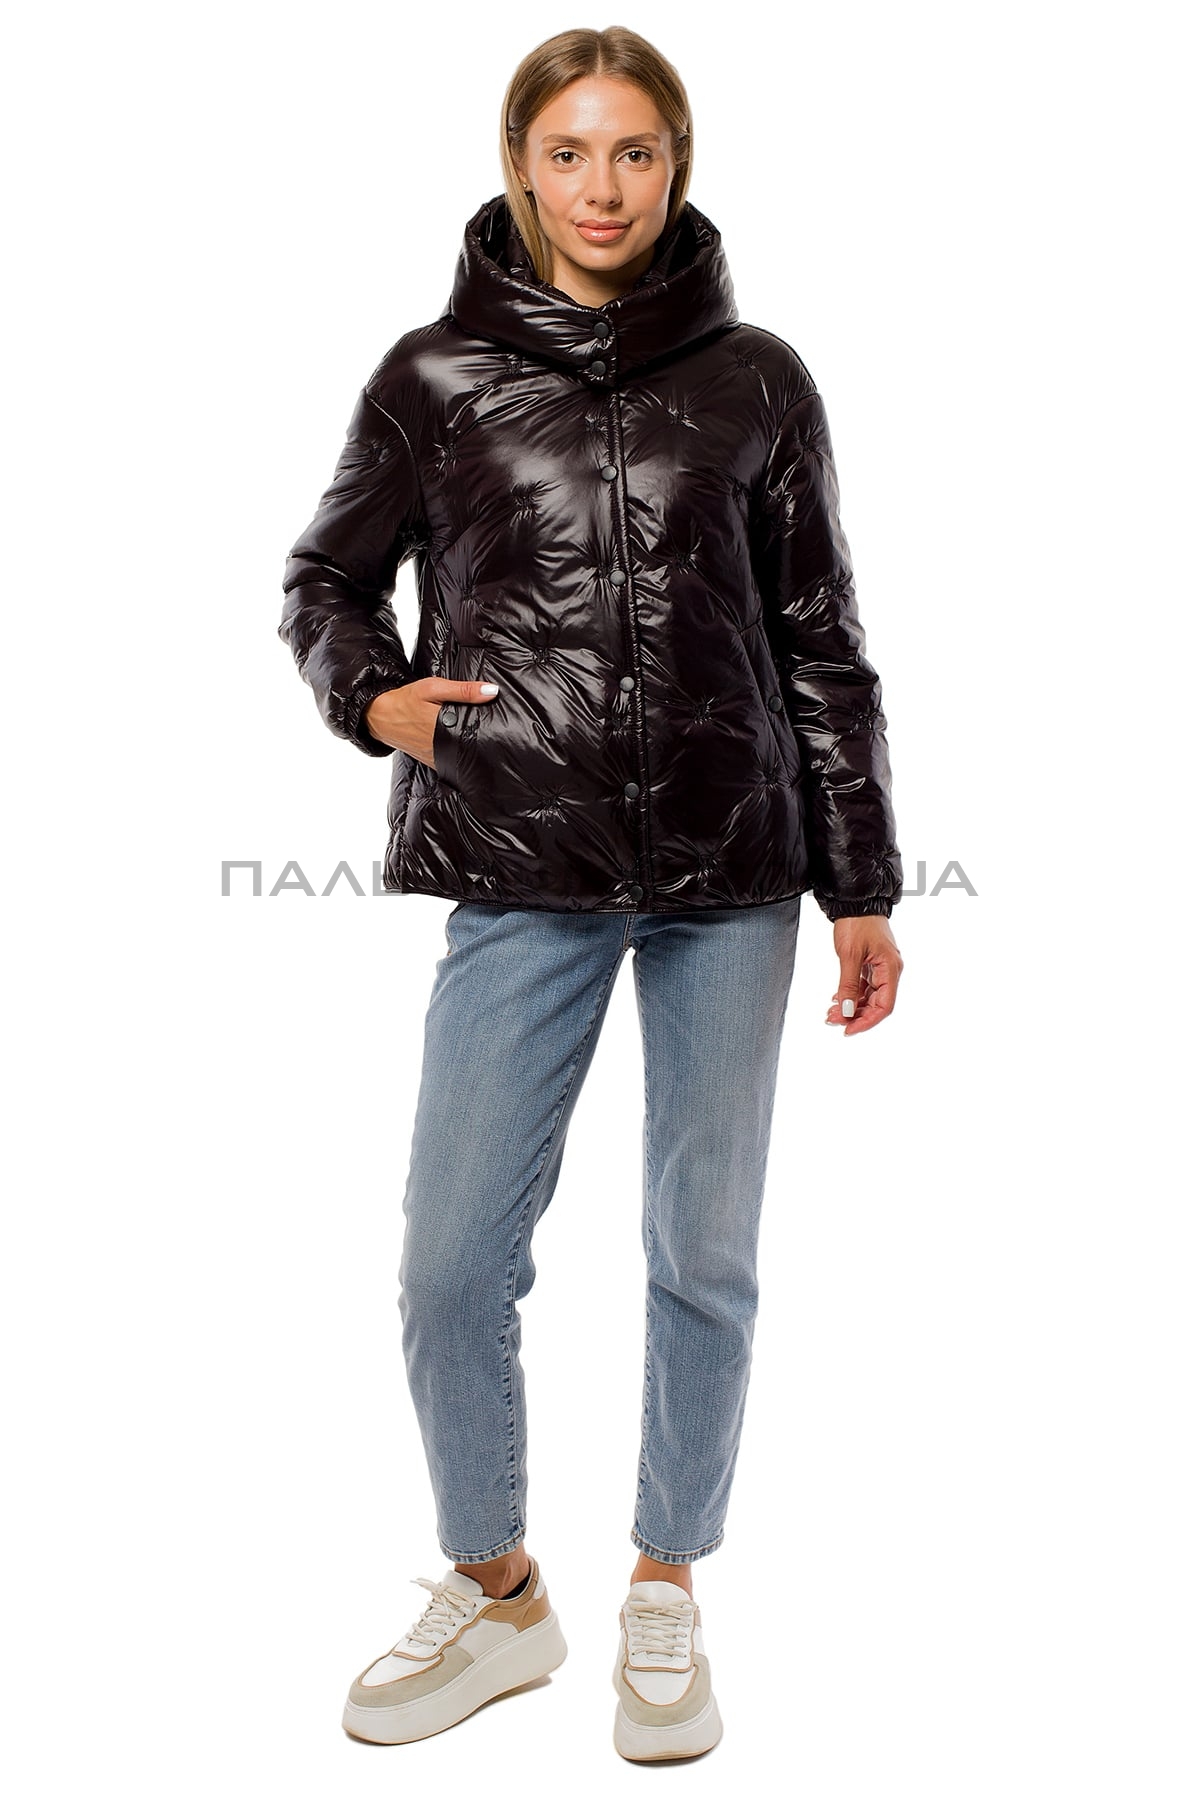  Жіноча коротка перламутрова куртка чорна